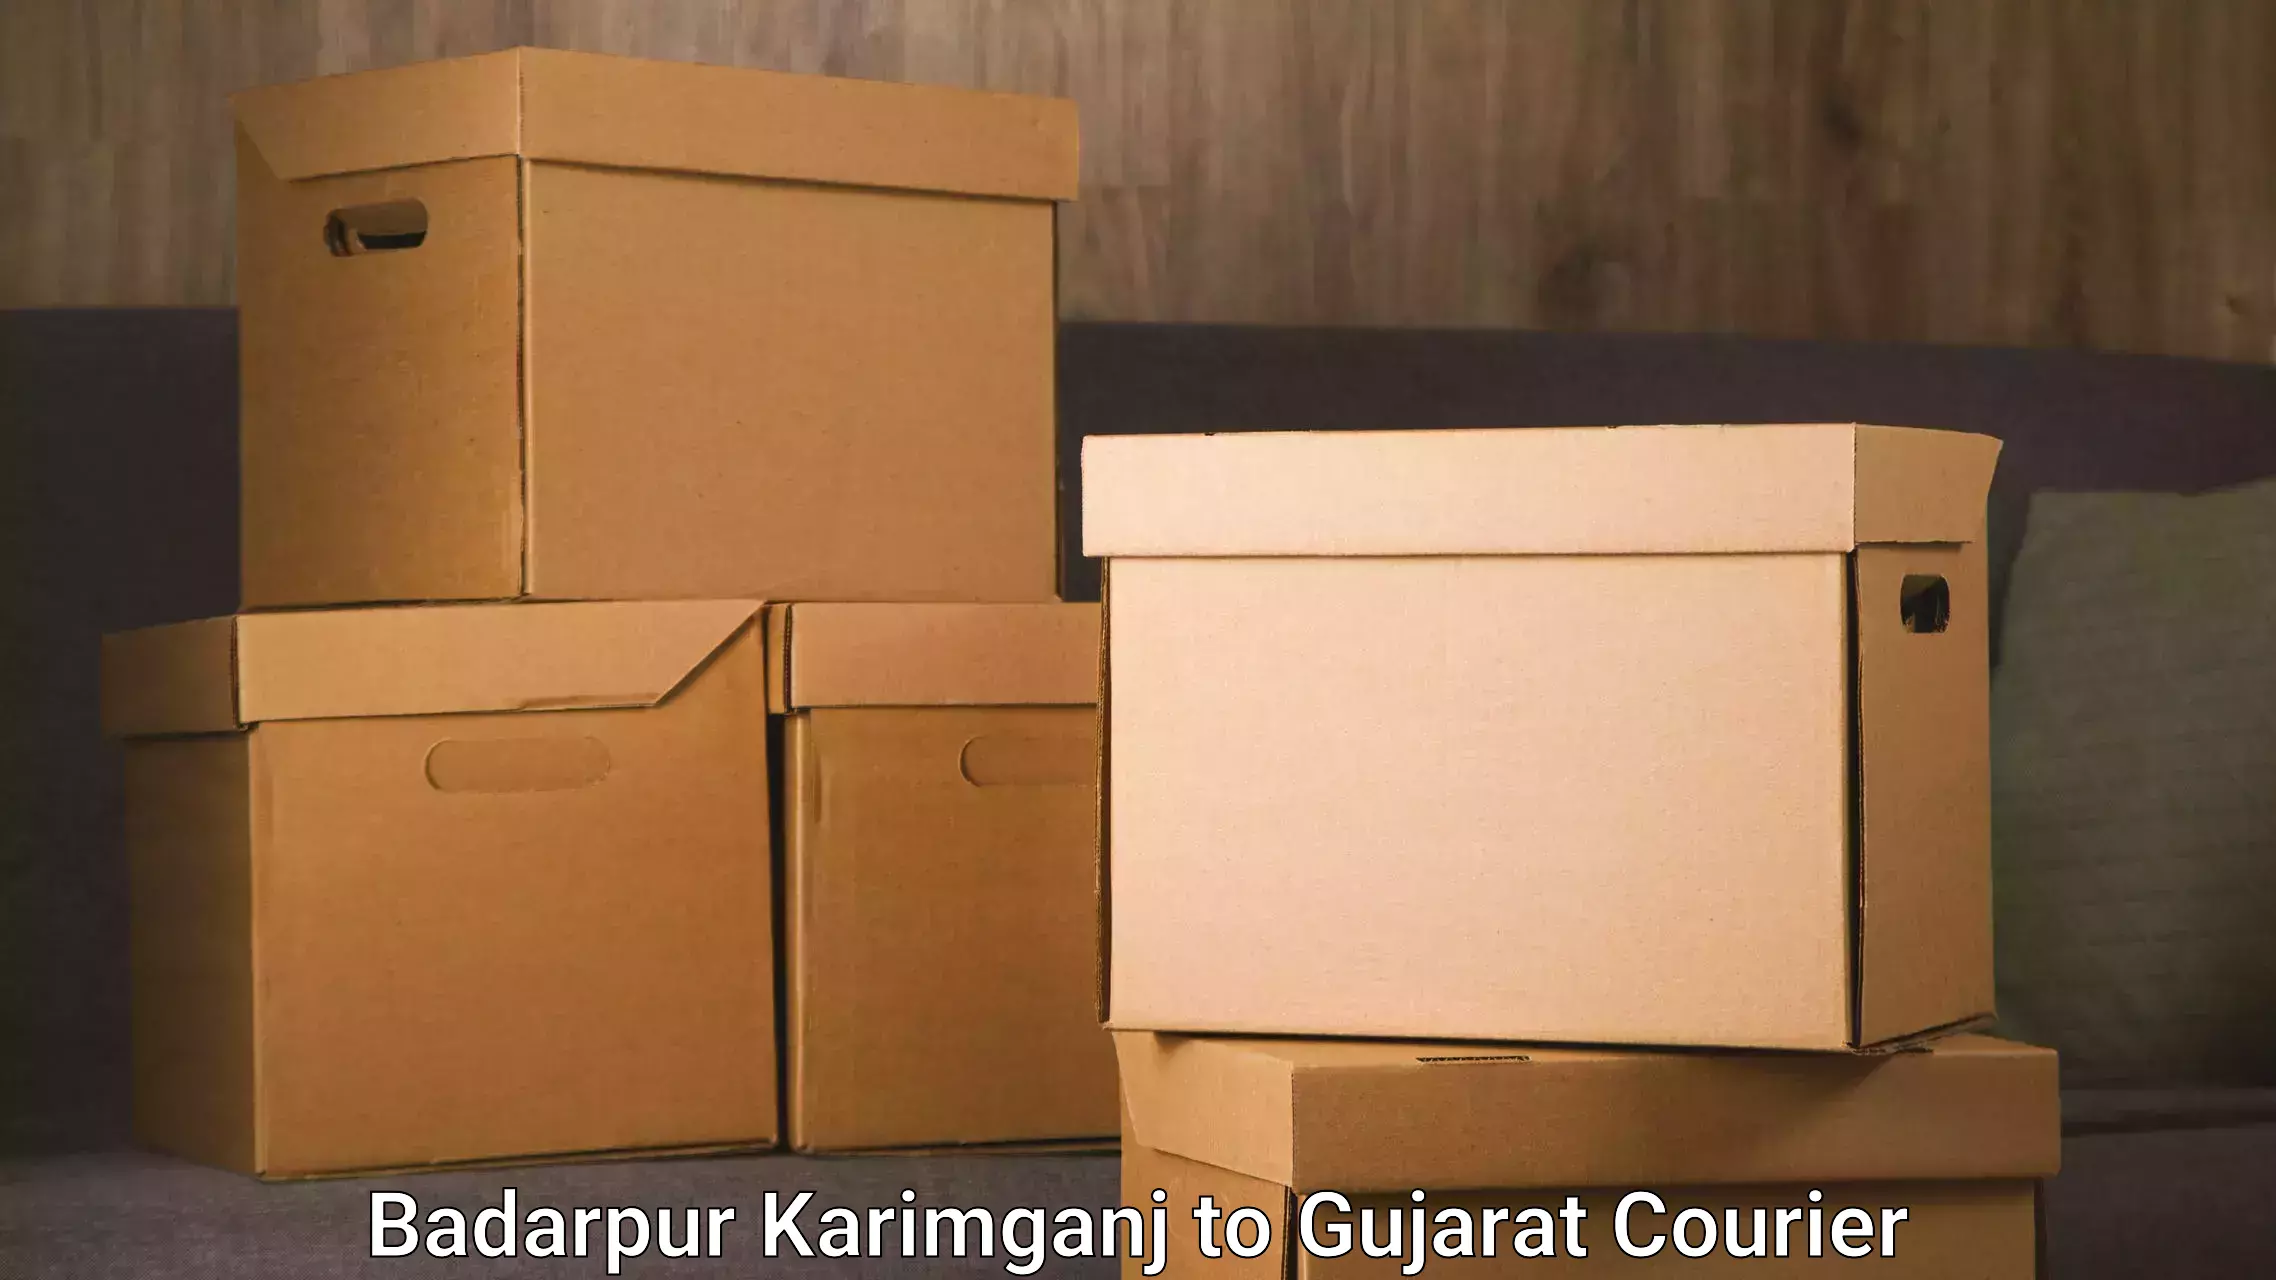 Express delivery network Badarpur Karimganj to Rapar